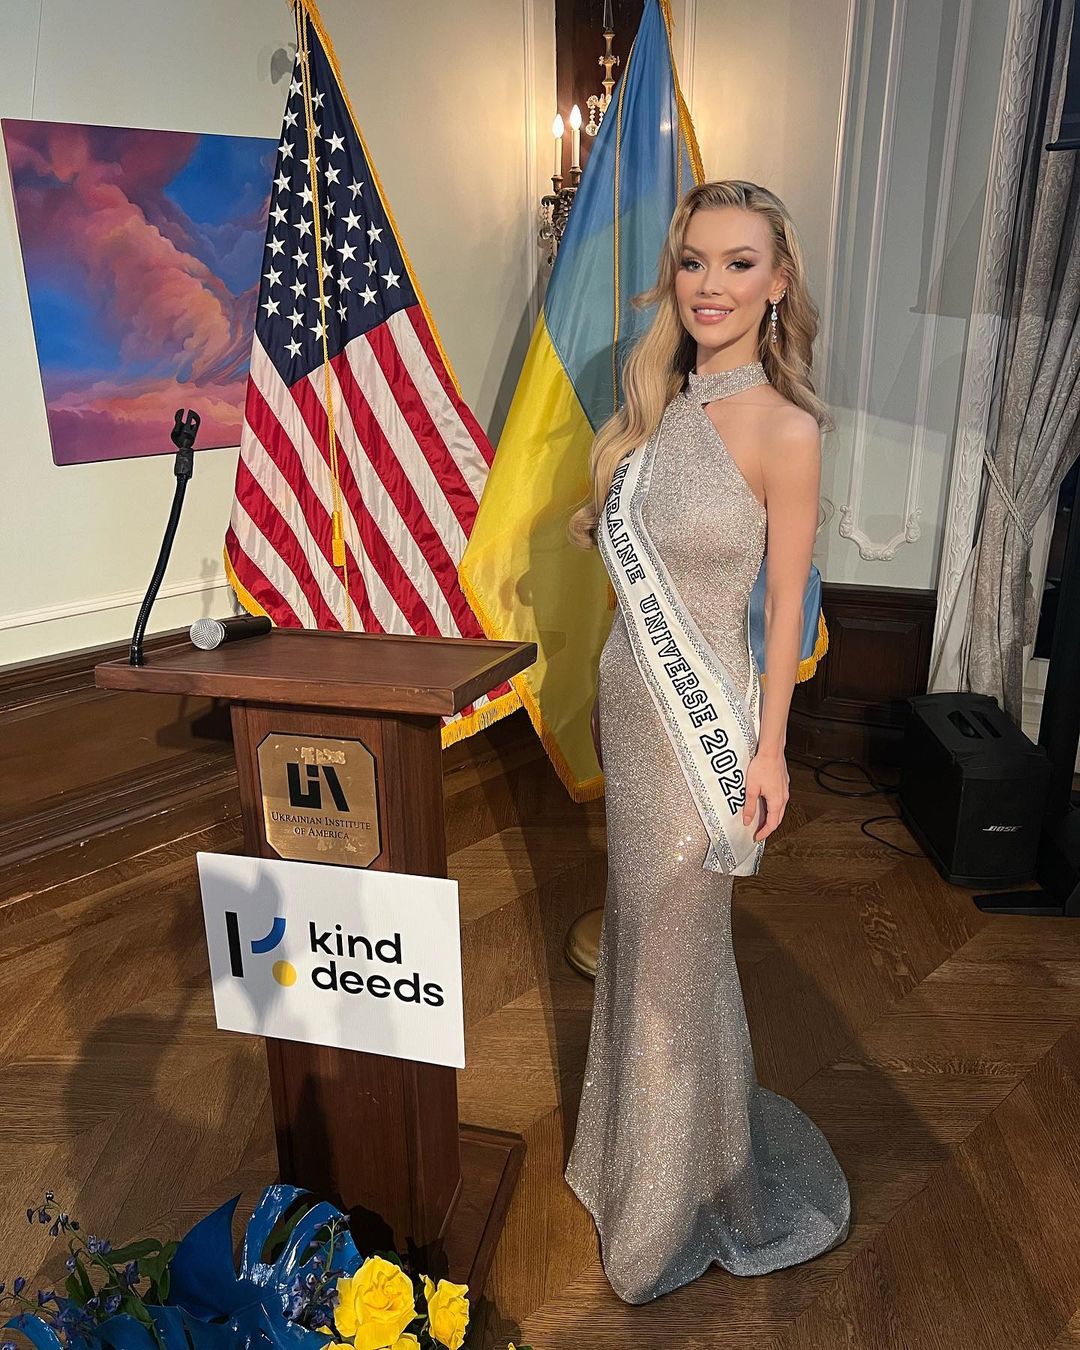 “Місс Україна Всесвіт“ Вікторія Апанасенко виходить заміж: королева краси показала каблучку